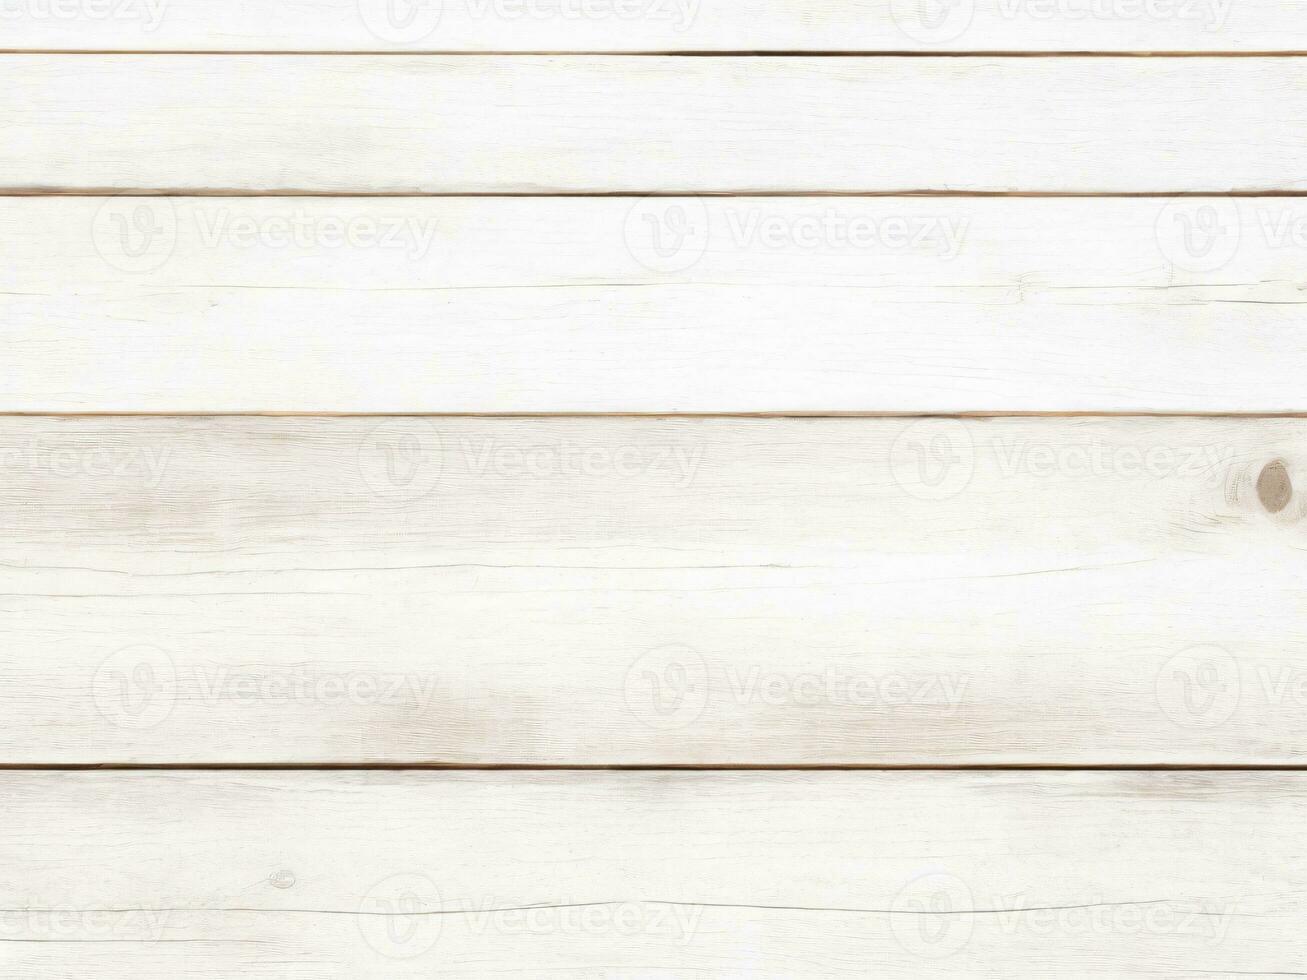 wit rustiek houten achtergrond, houten bord foto